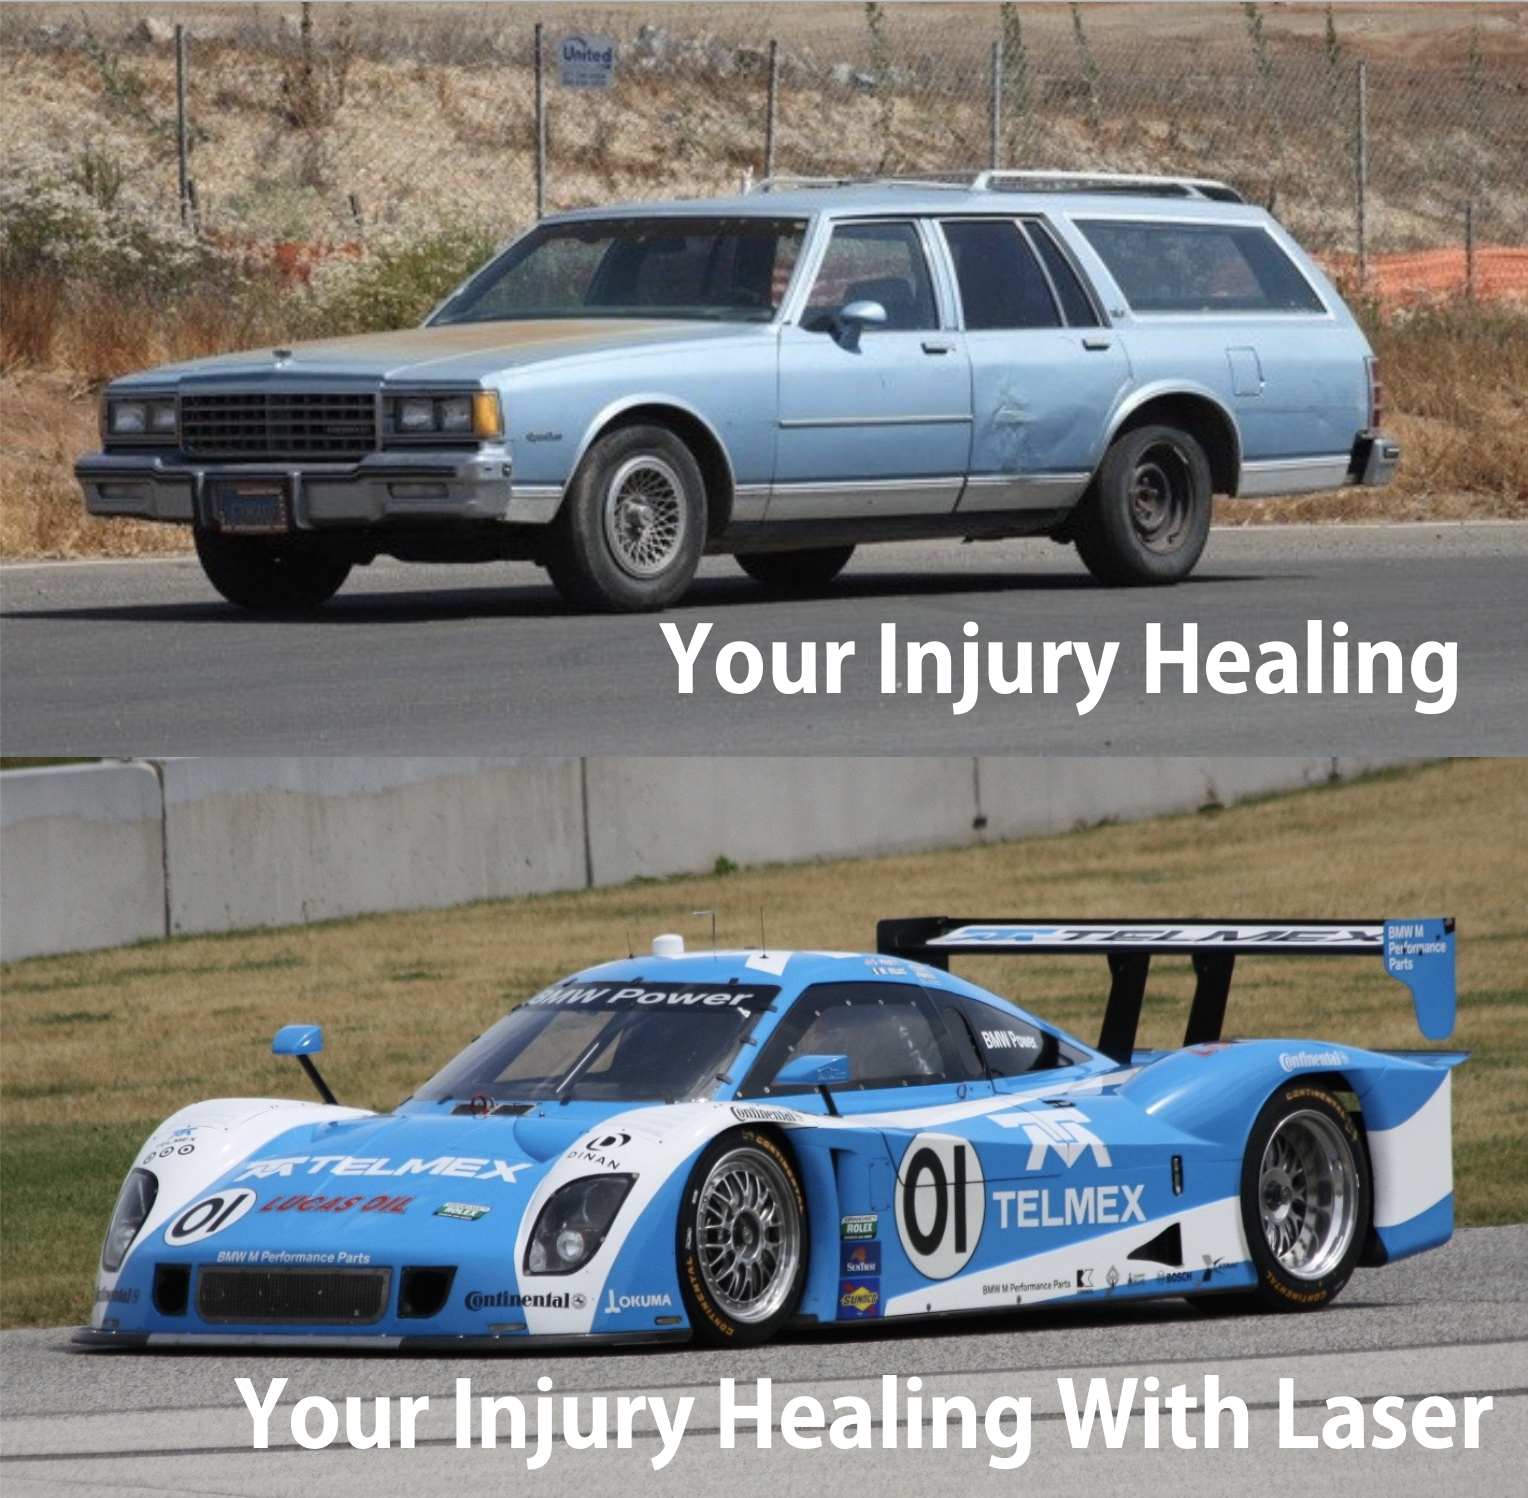 Injury healing with laser